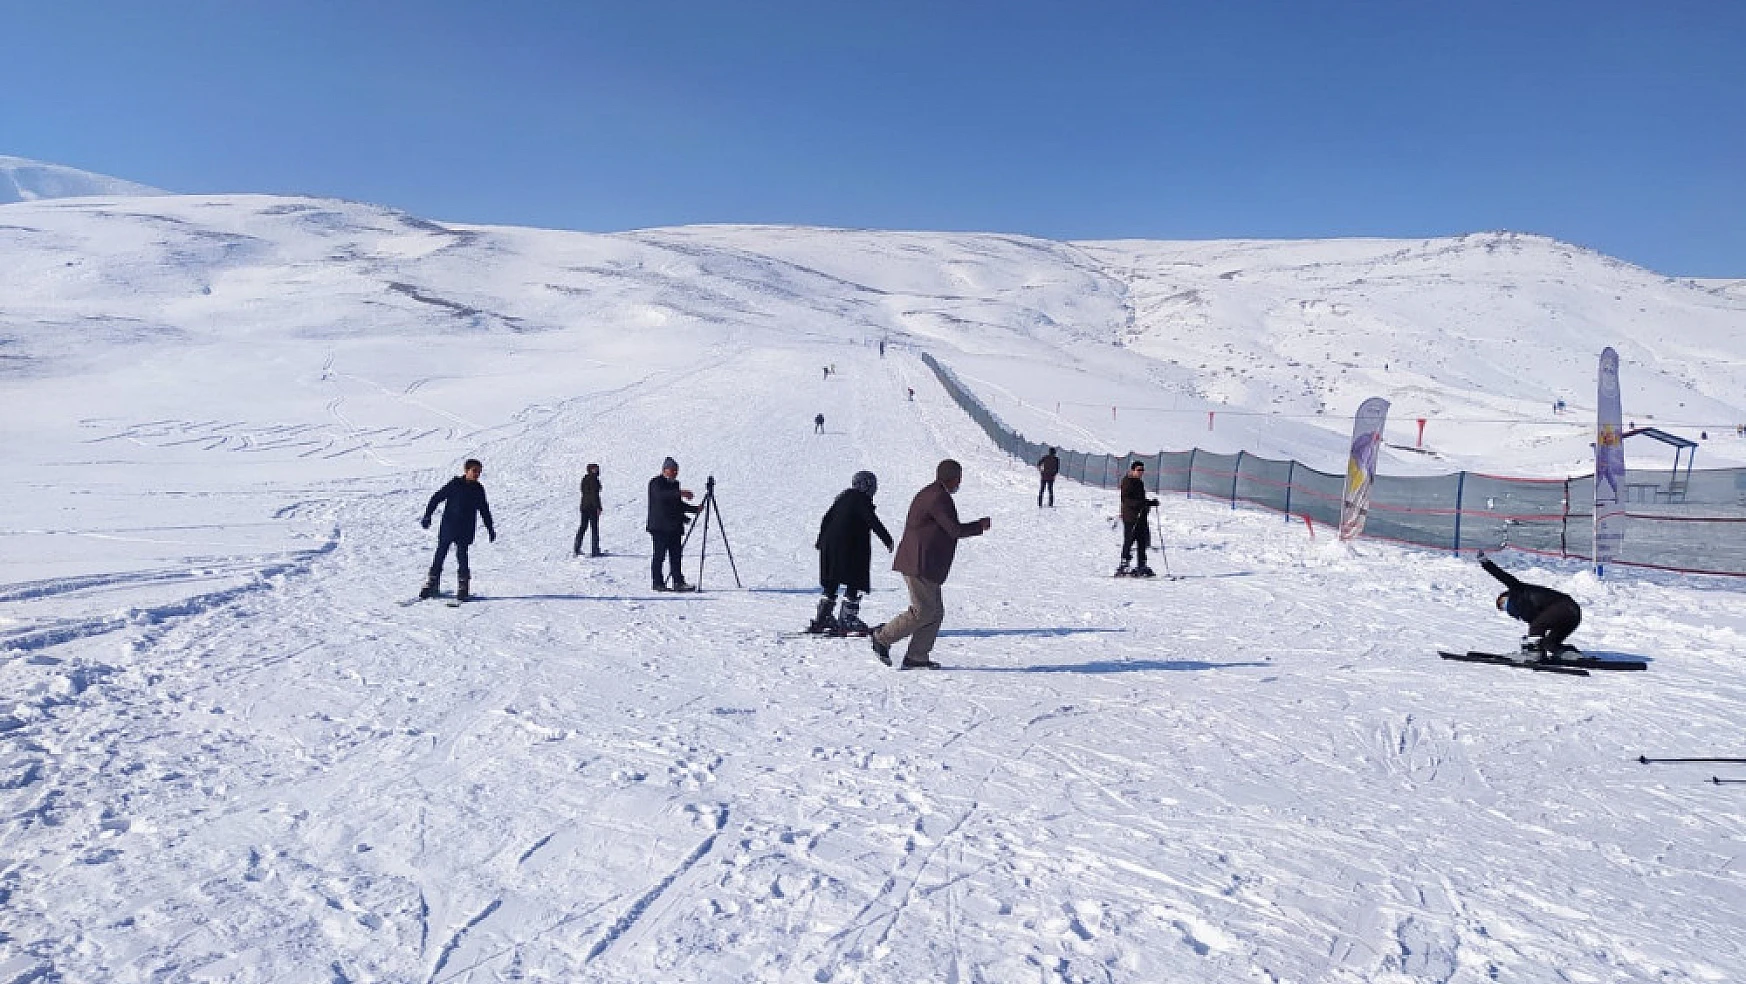 Çaldıran'da kayak sezonu açıldı